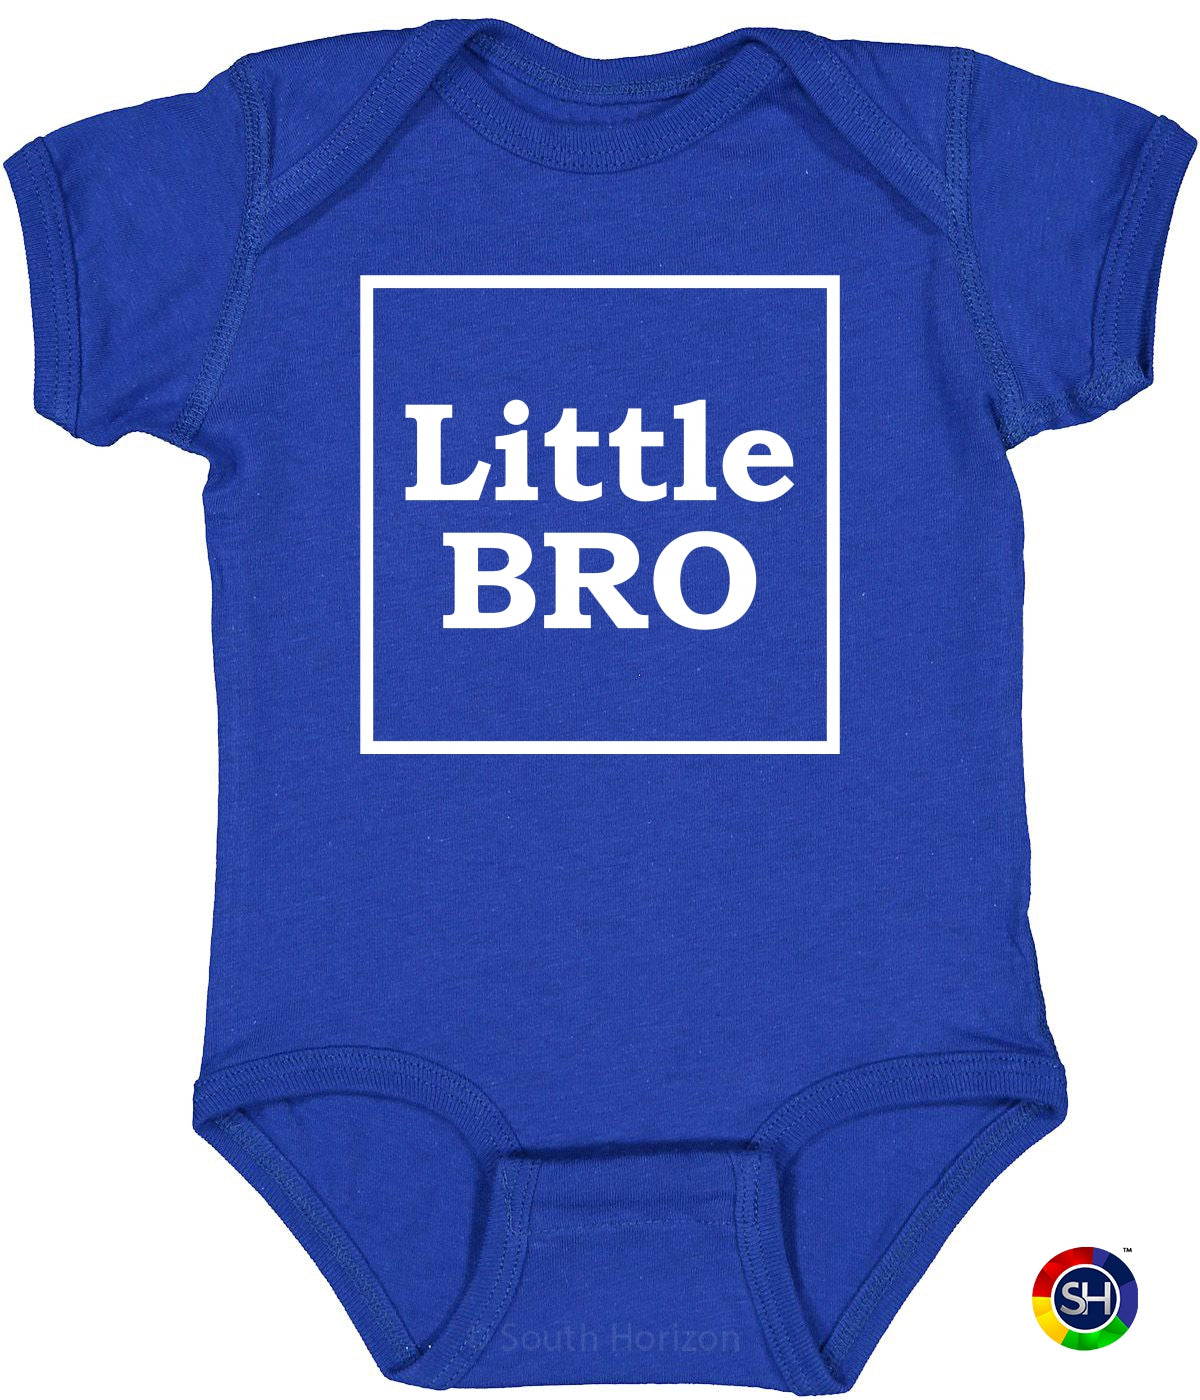 Little Bro on Infant BodySuit